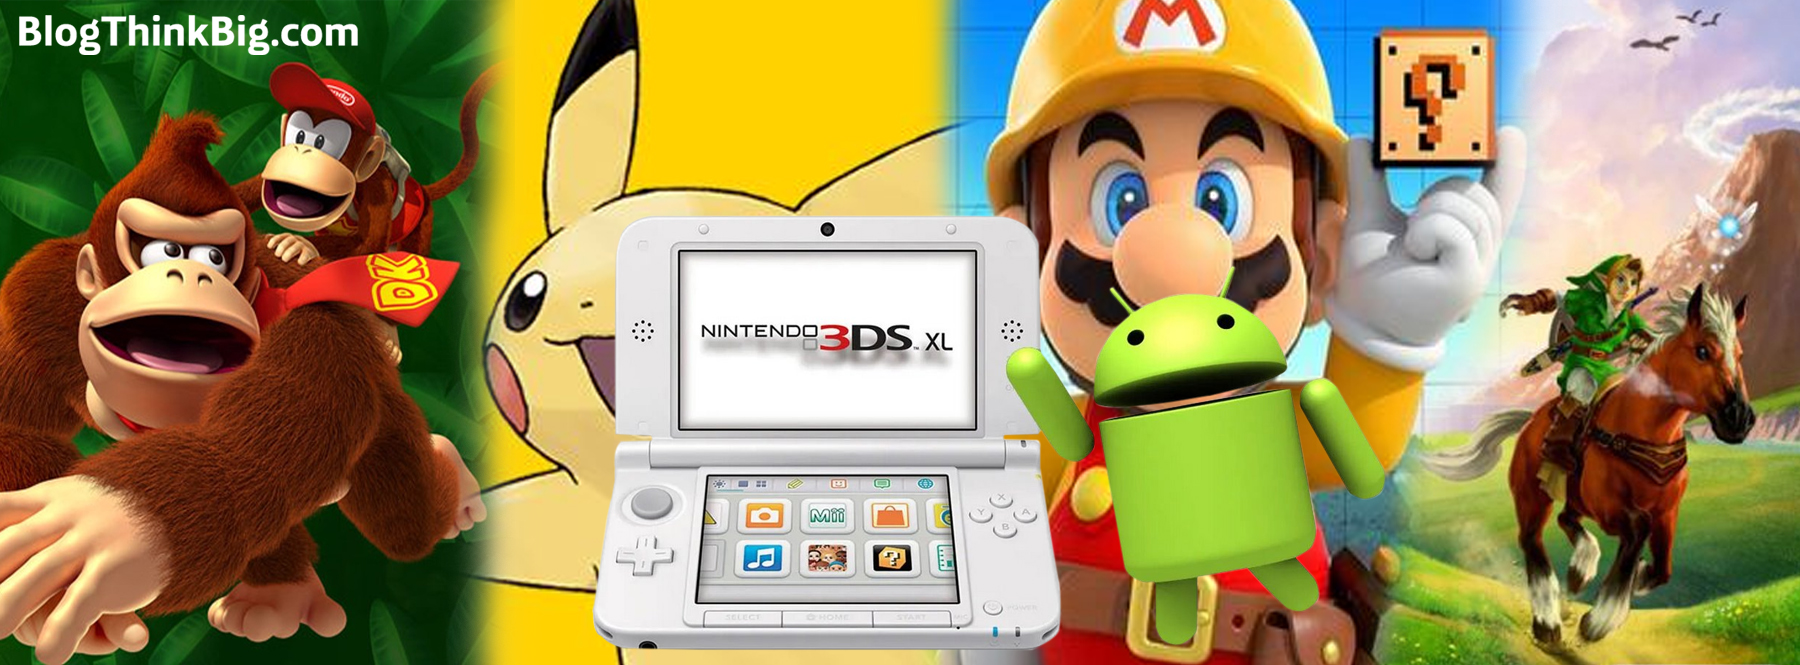 Game Station - Juegos de Nintendo 3DS disponibles.